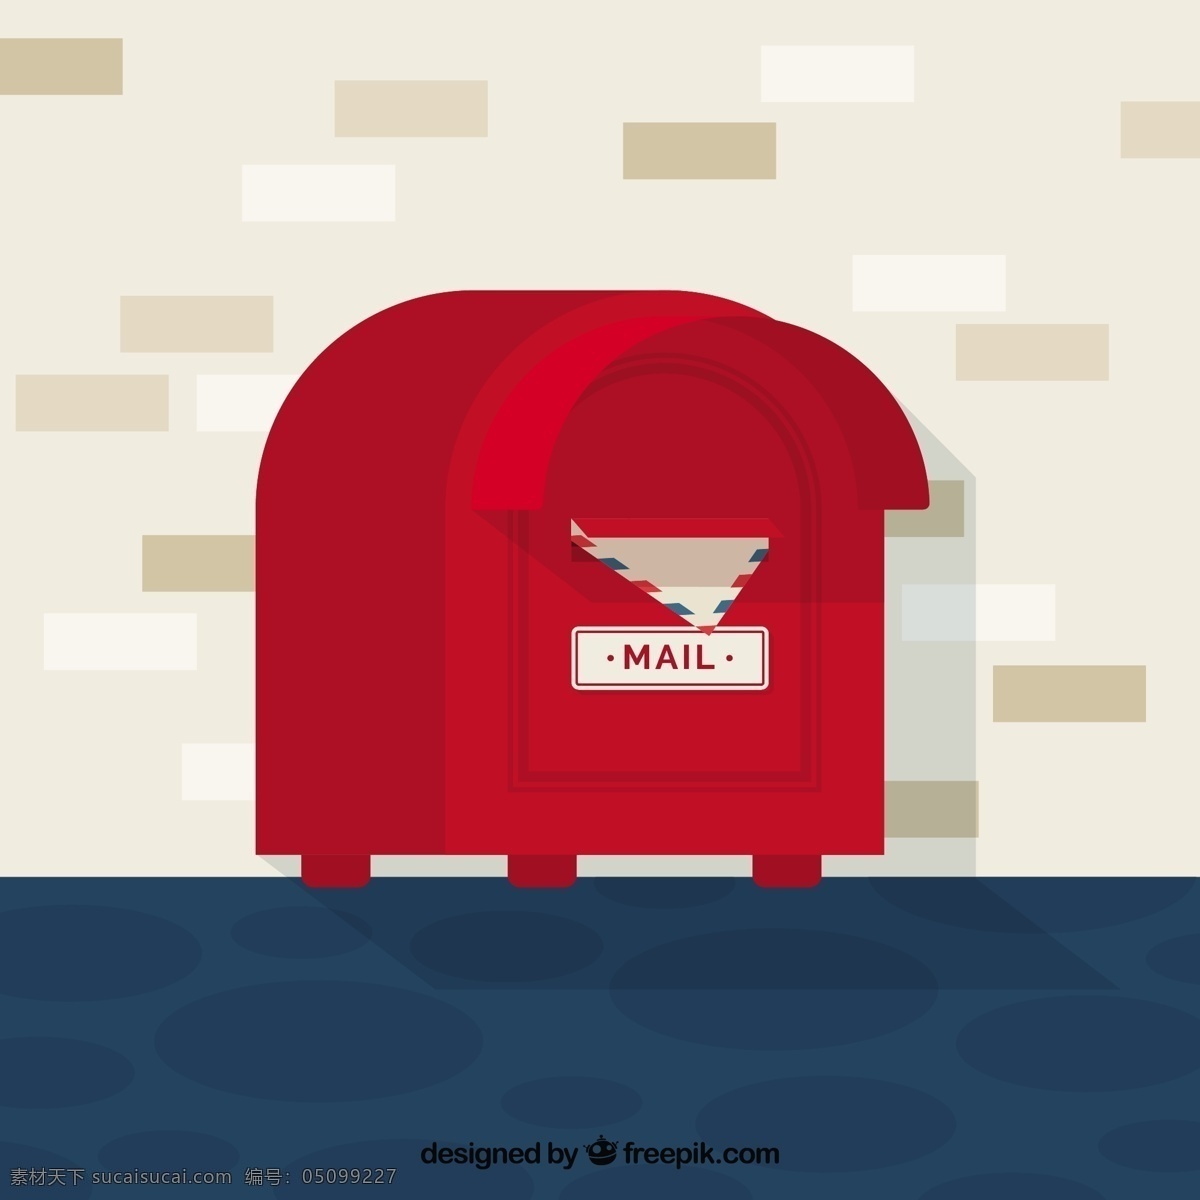 手绘 红色 邮箱 平面设计 背景 矢量 红色邮箱 平面设计背景 矢量素材